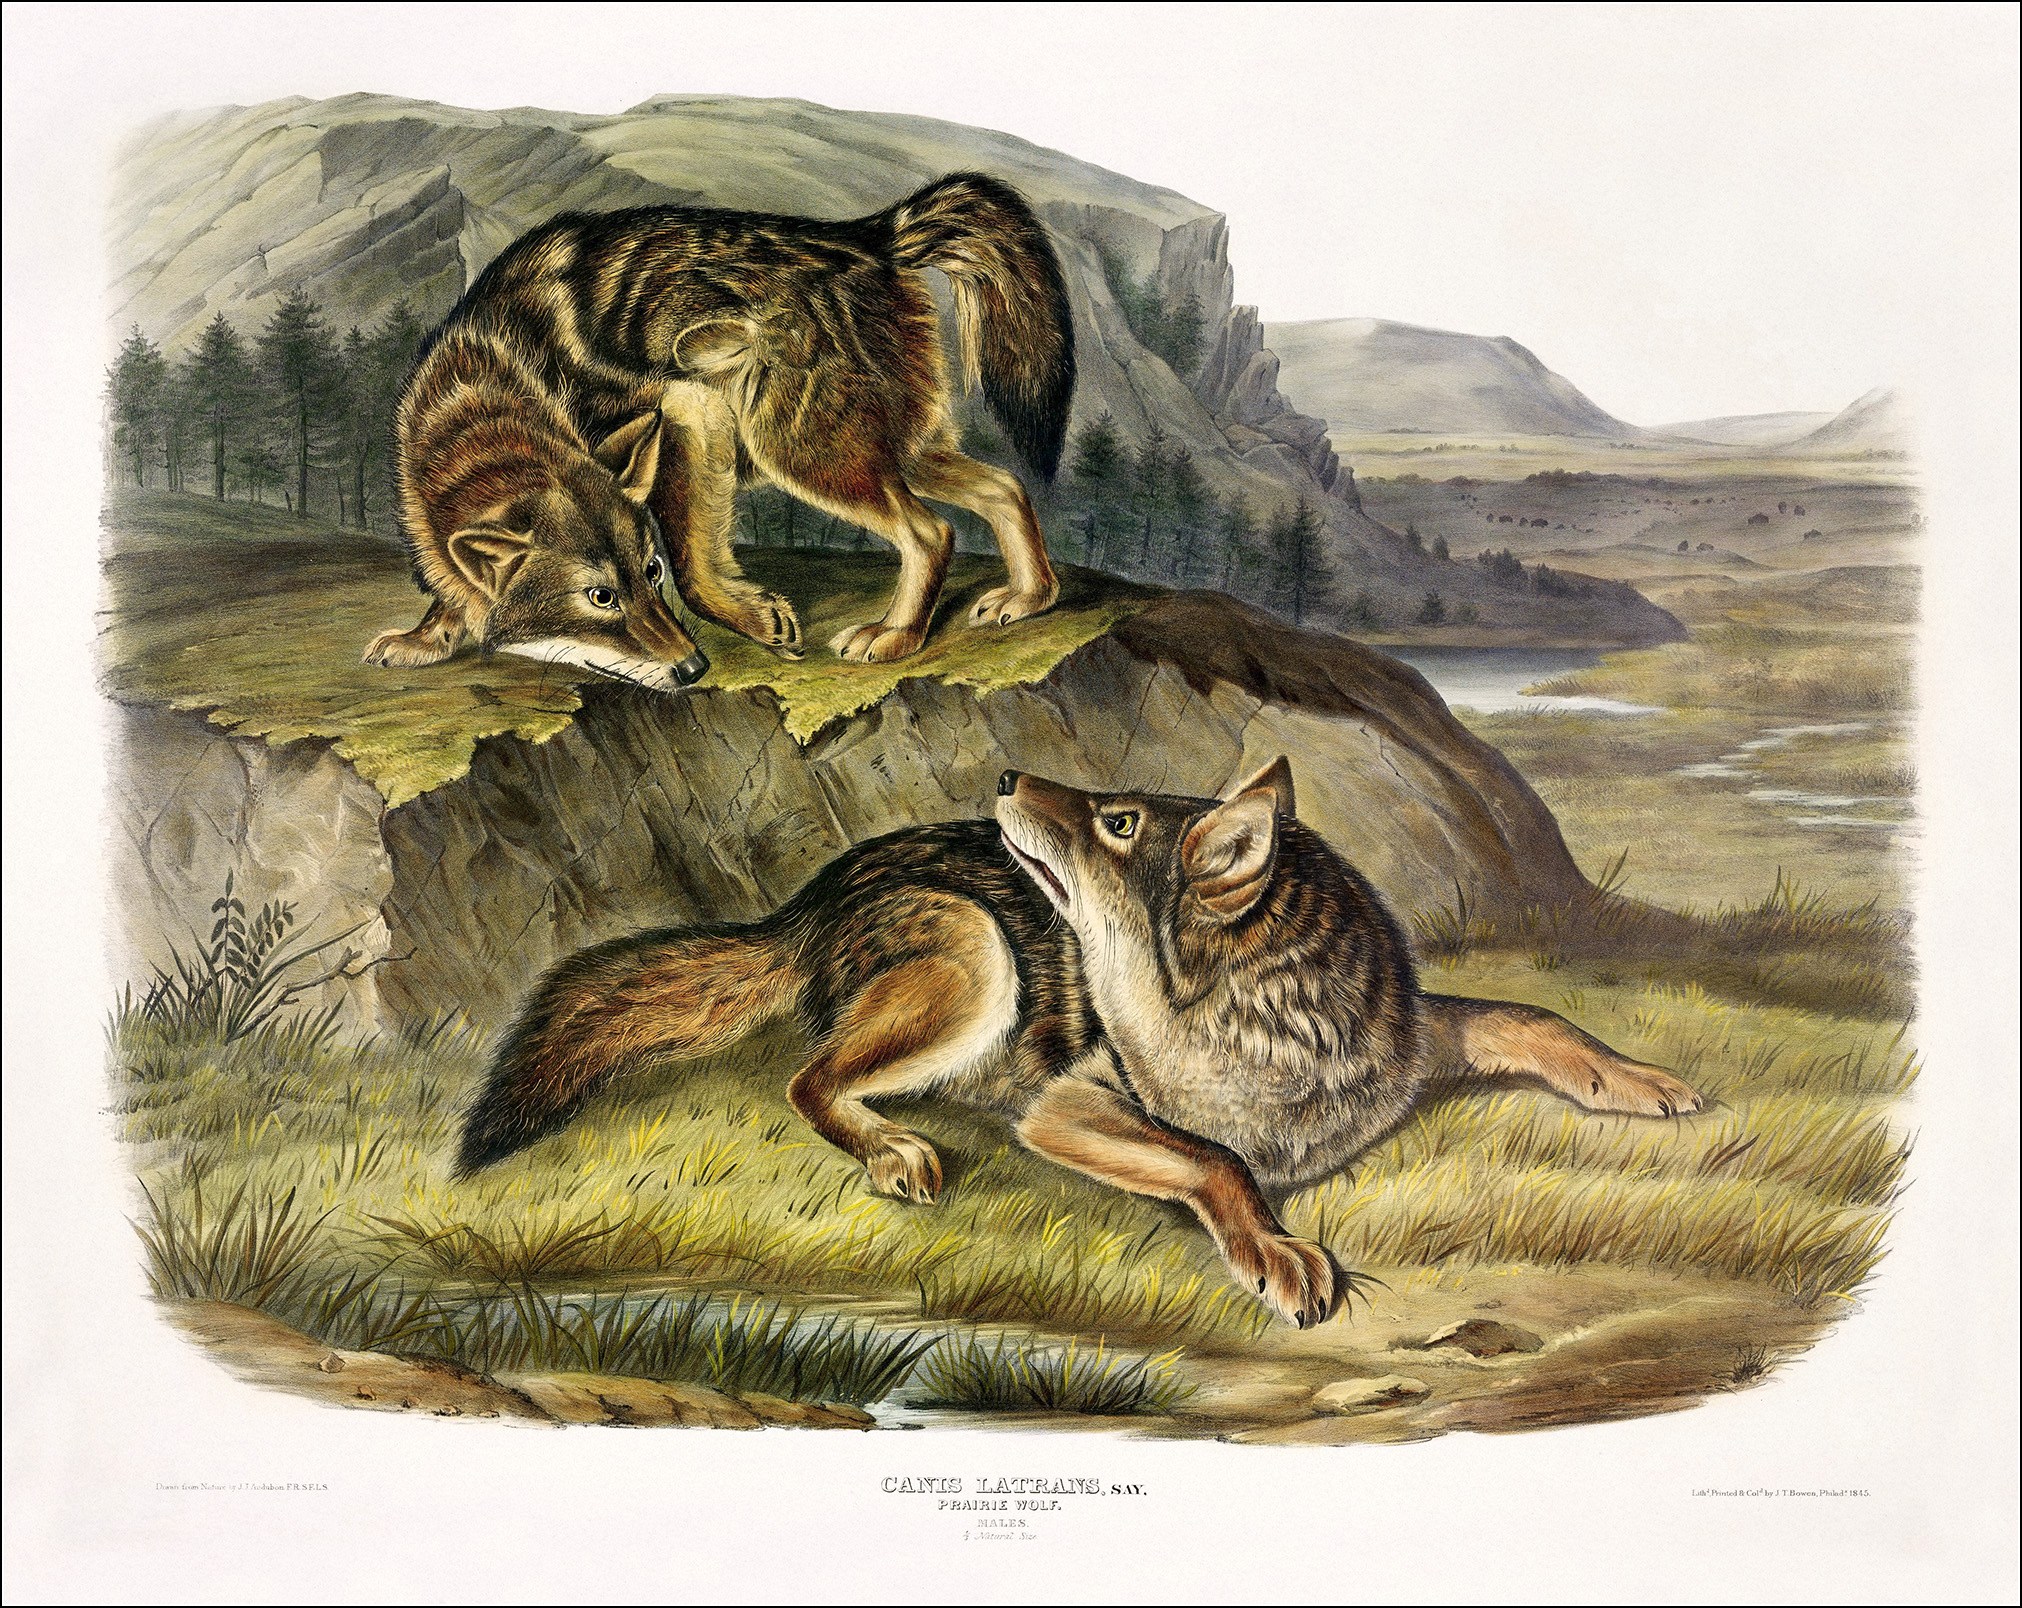 John James Audubon, The Viviparous Quadrupeds of North America